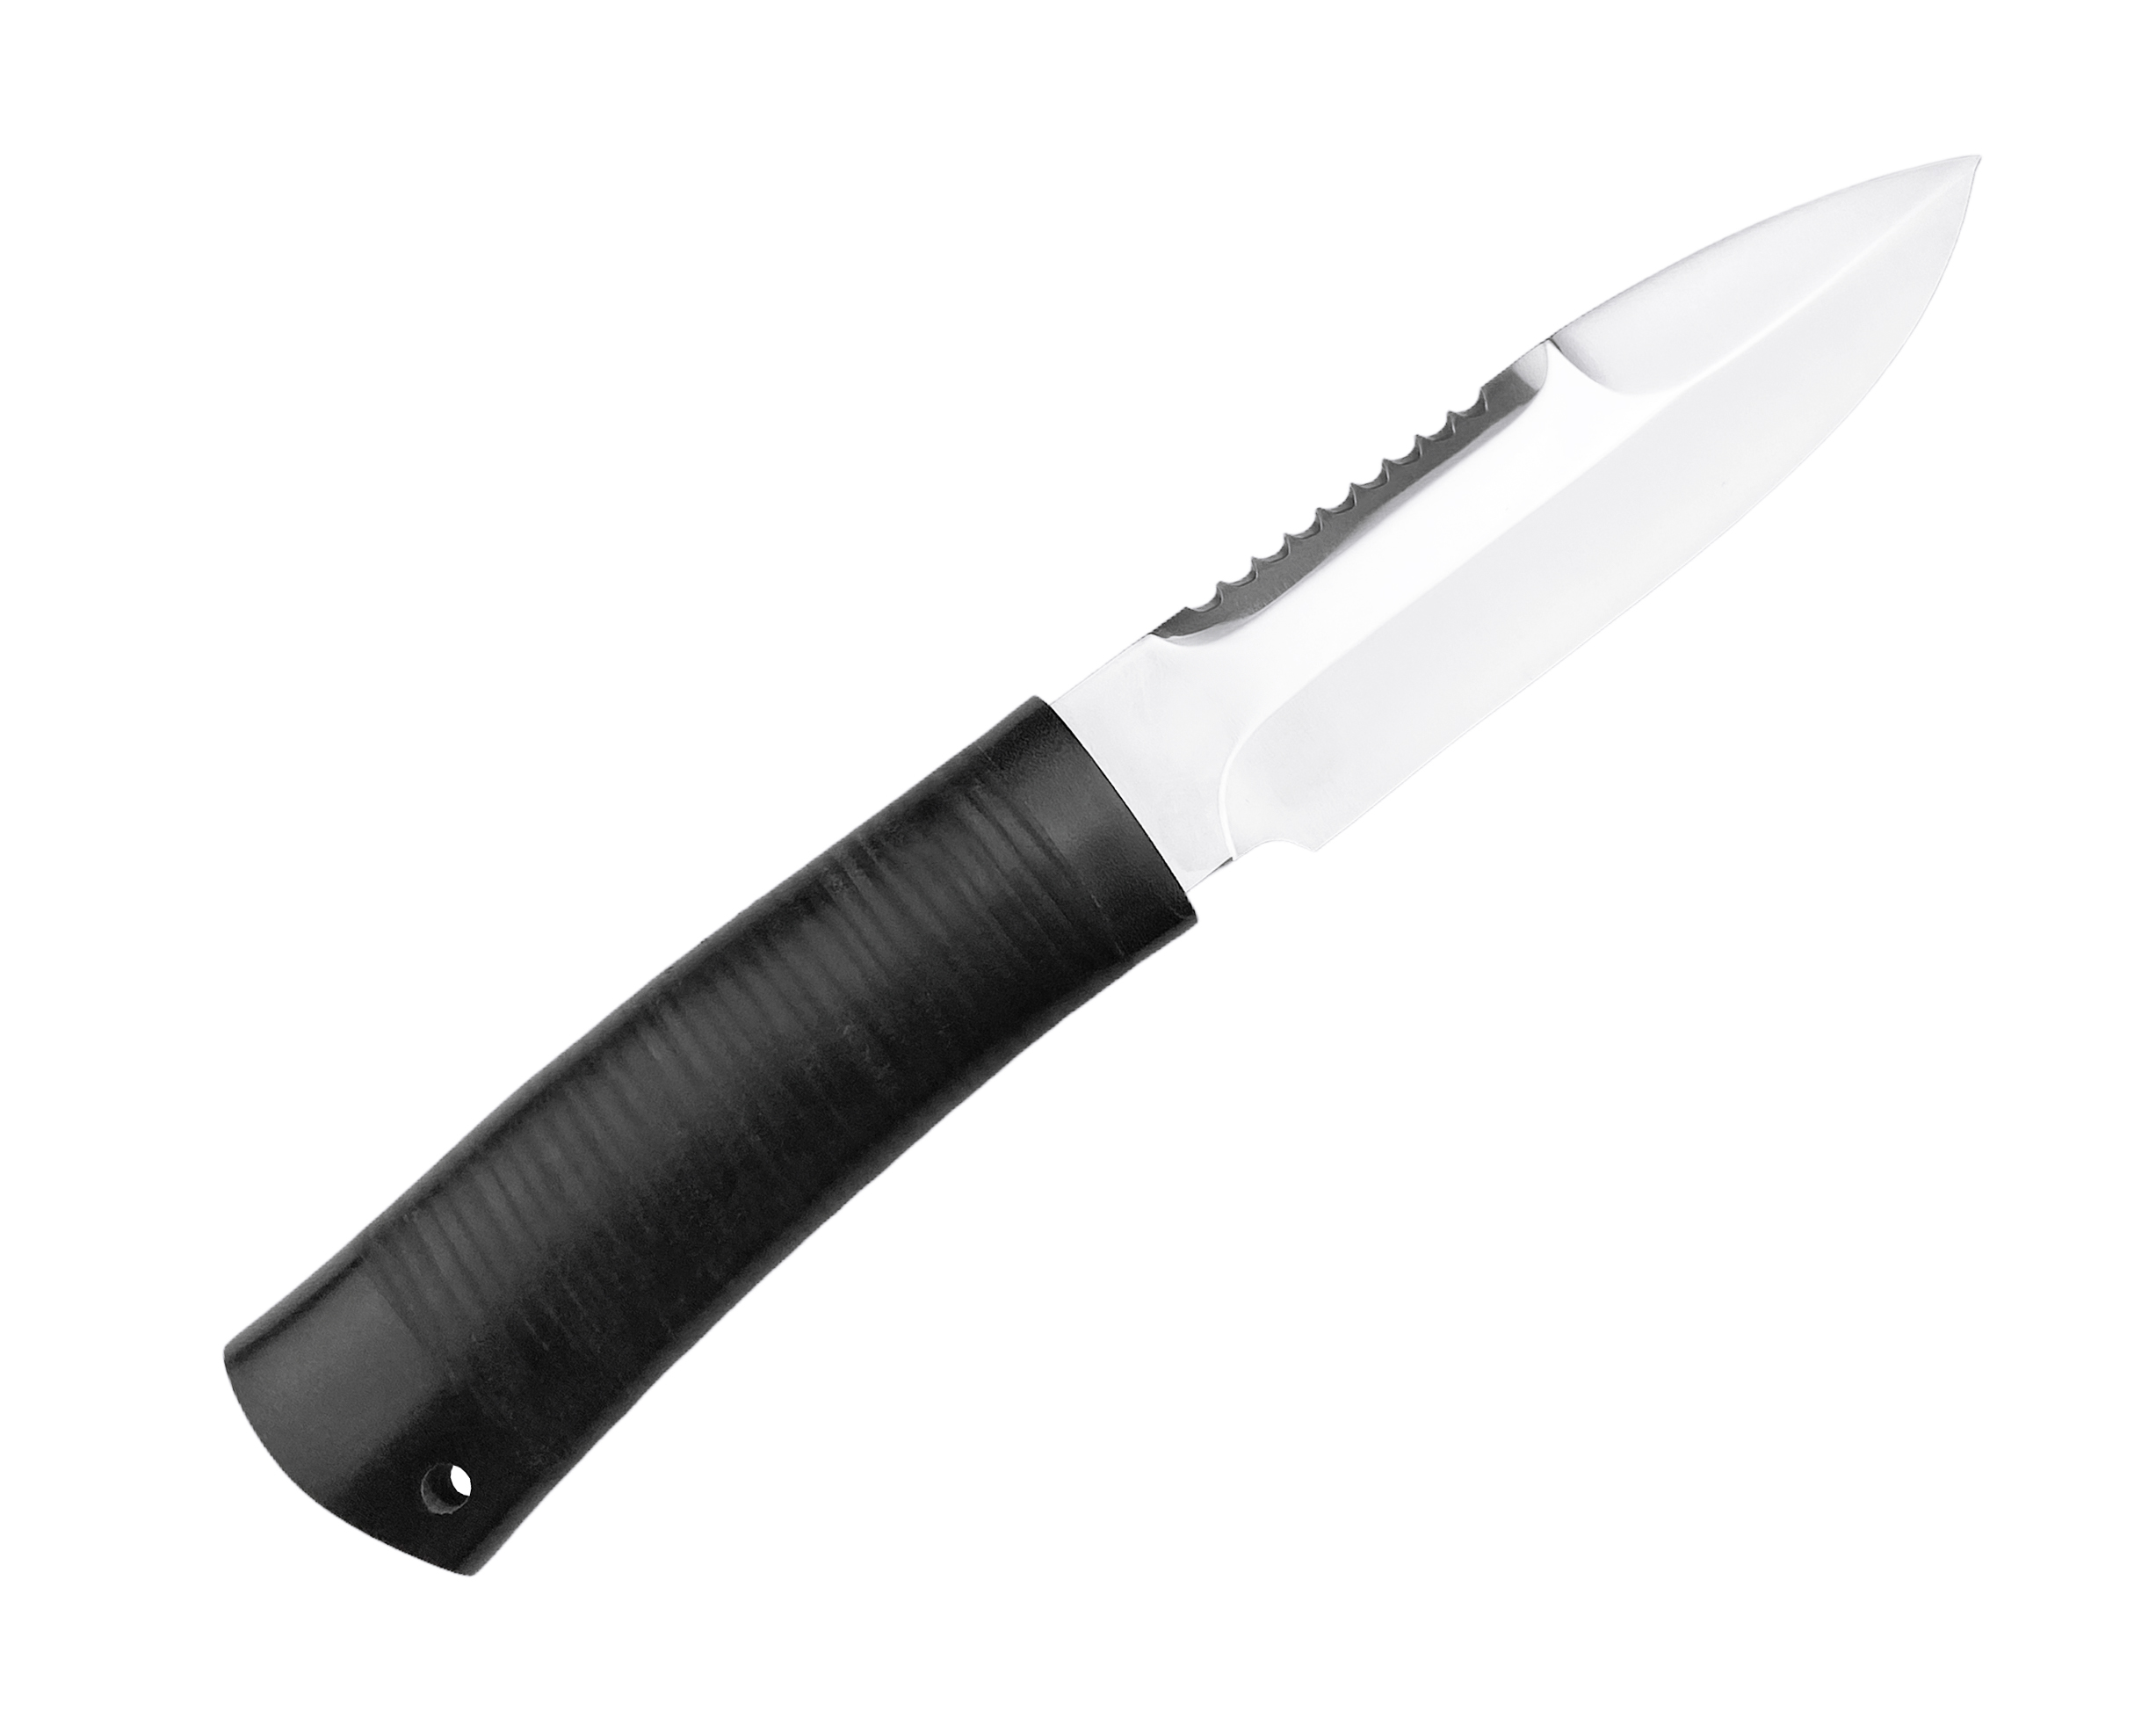 Нож Росоружие Спас-1 ЭИ-107 кожа    - фото 1